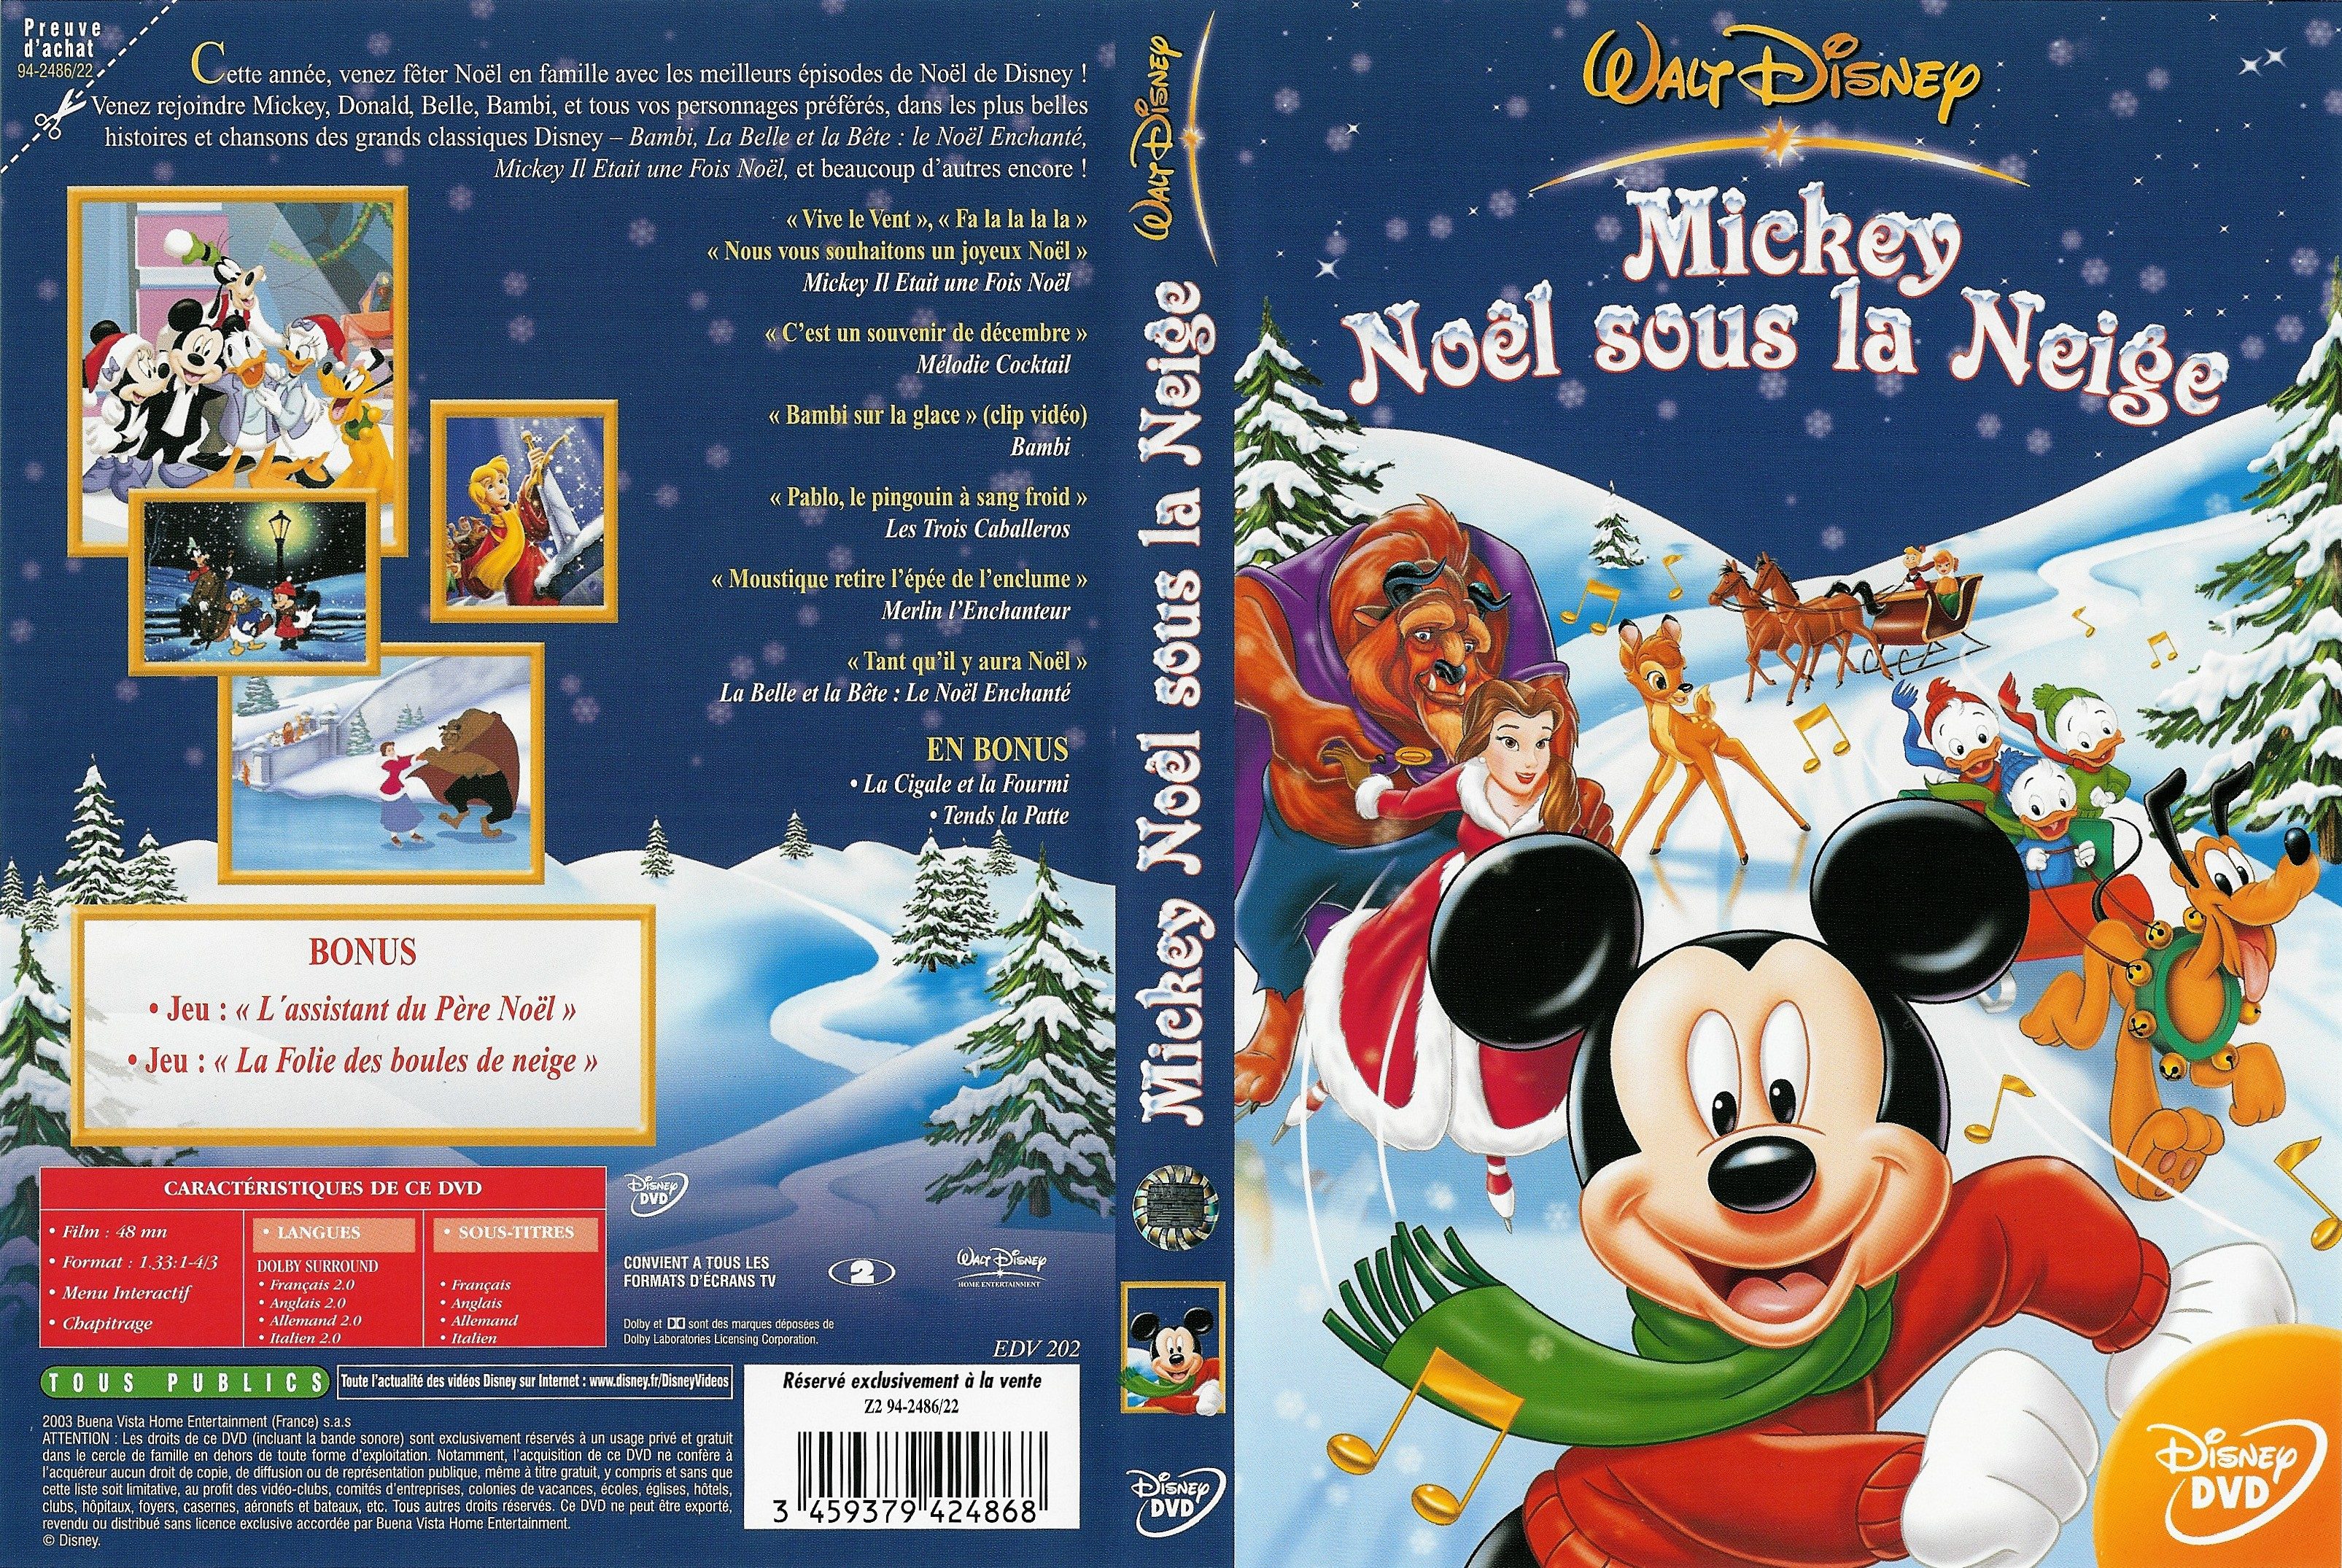 Jaquette DVD Mickey Noel sous la neige